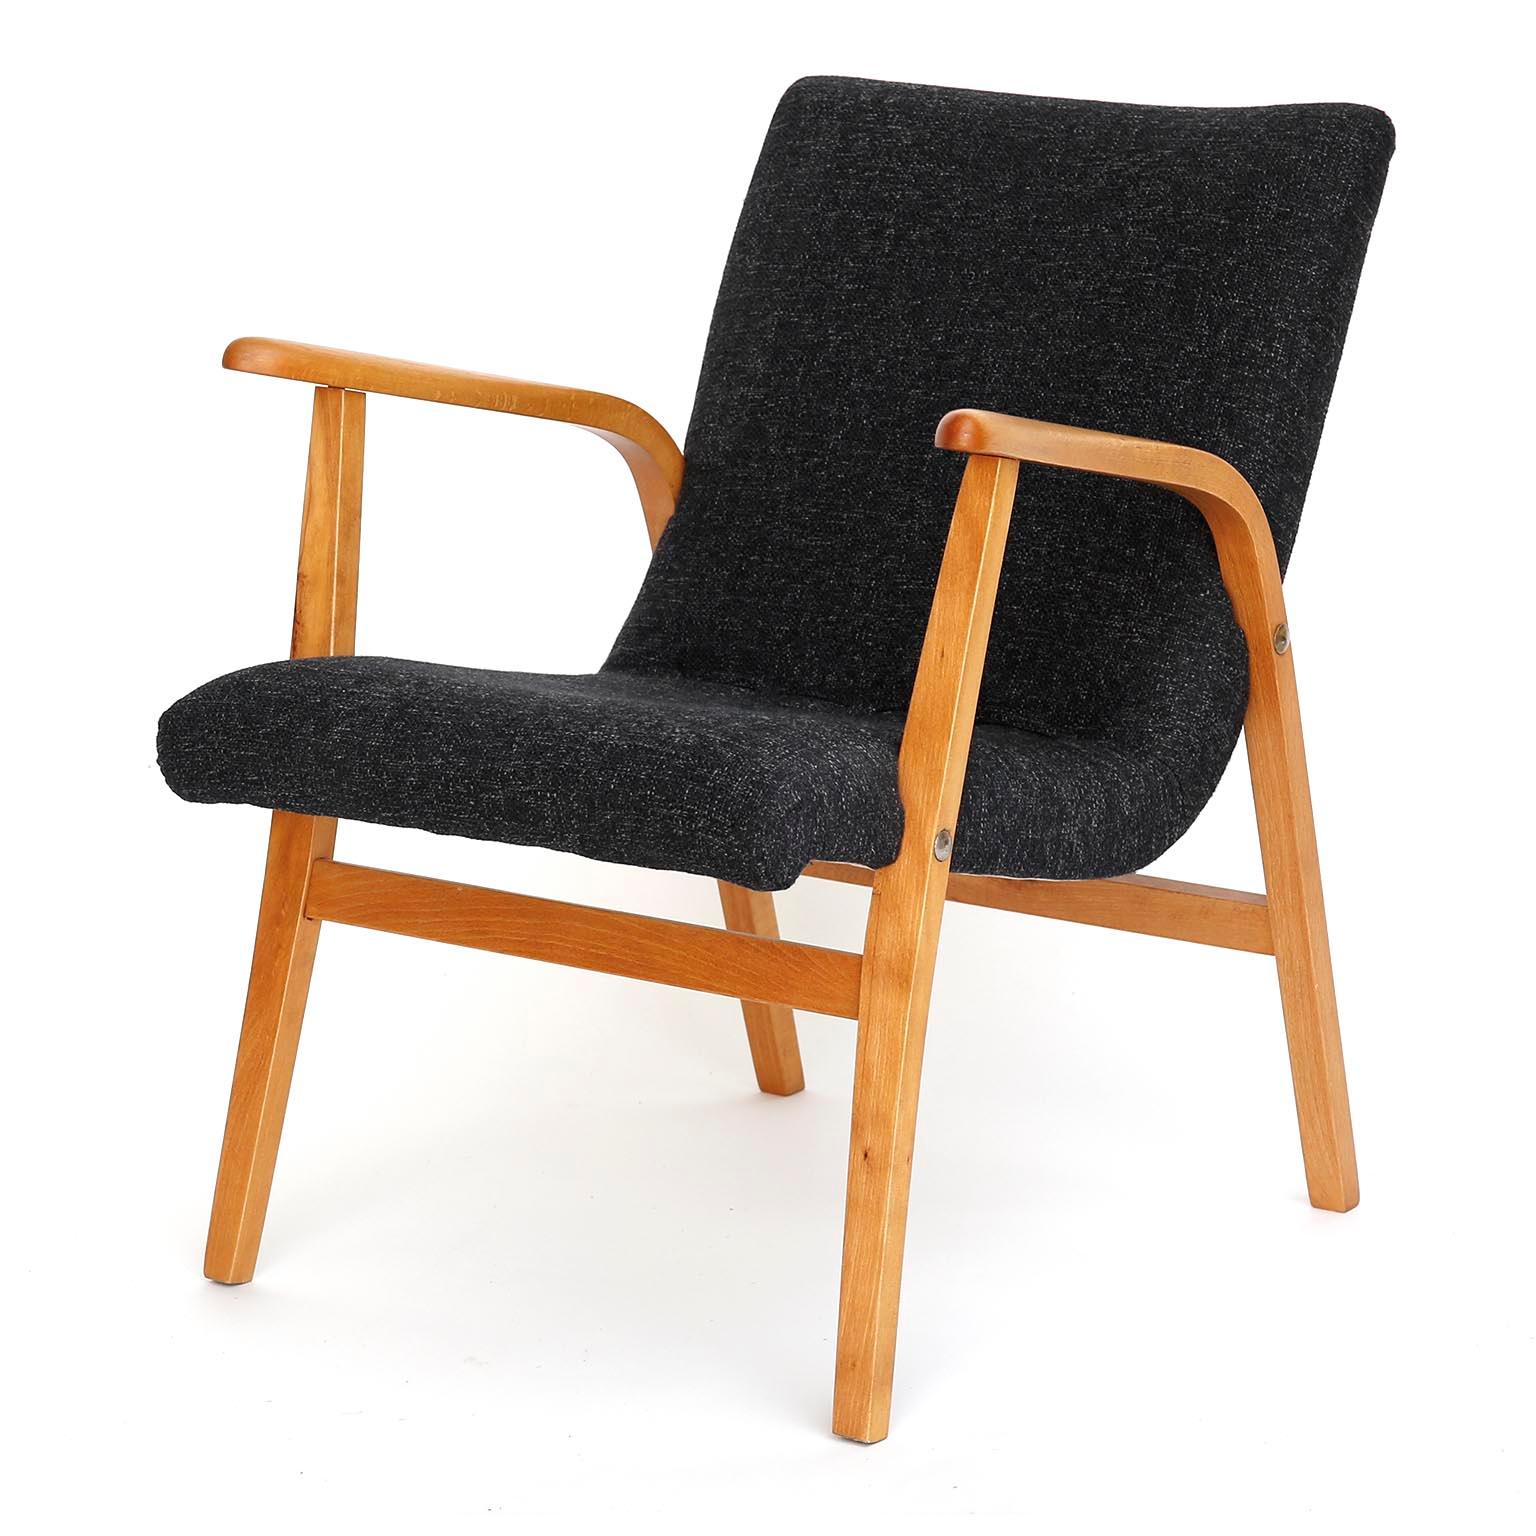 Chaise longue du milieu du siècle dernier, conçue par Roland Rainer pour le 